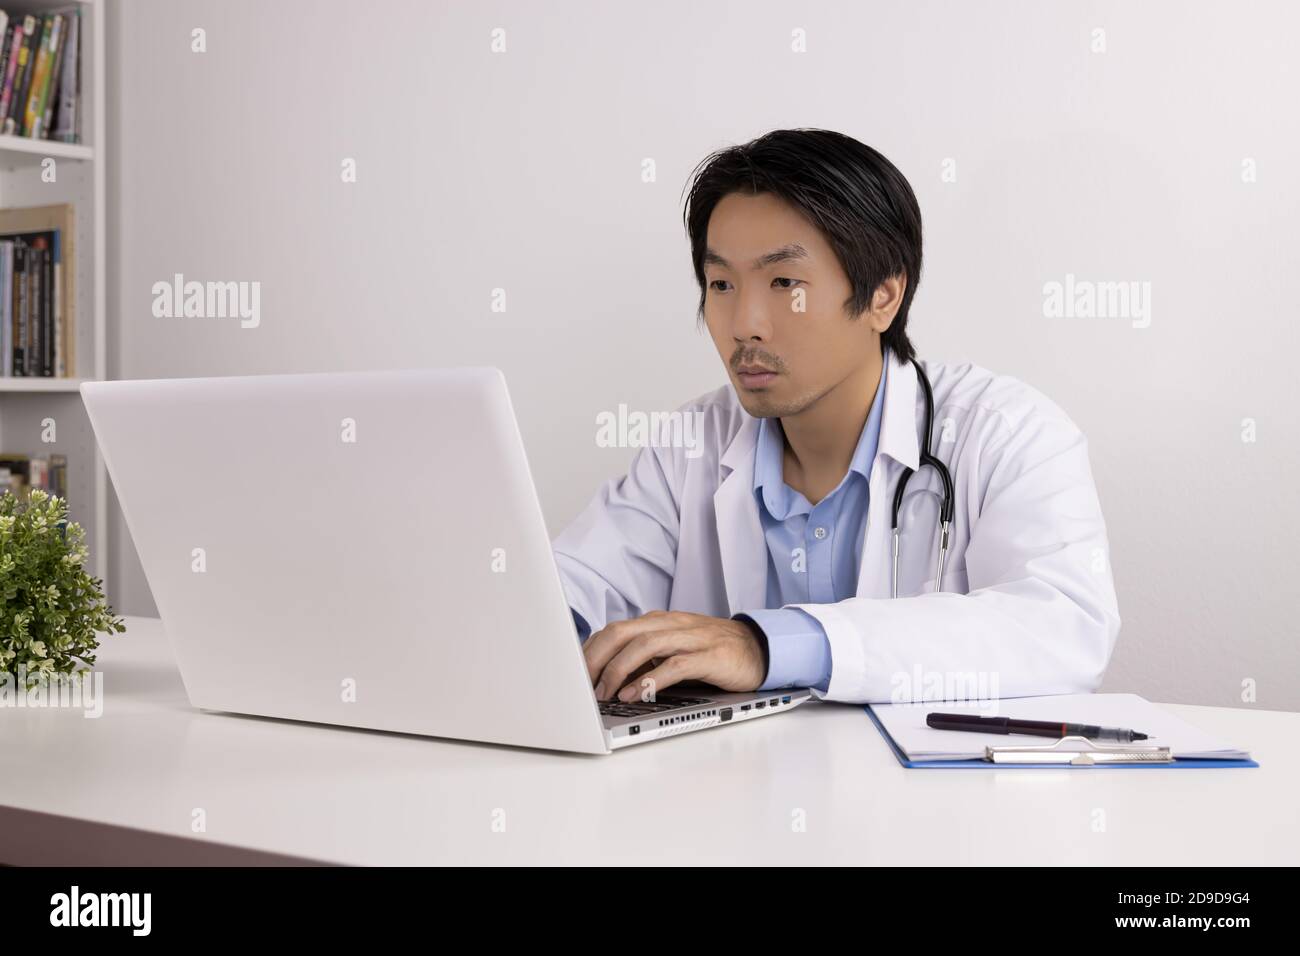 Junge asiatische Arzt Mann im Labor Mantel oder Kleid mit Stethoskop mit Laptop-Computer auf Doctor Table in Office Stockfoto